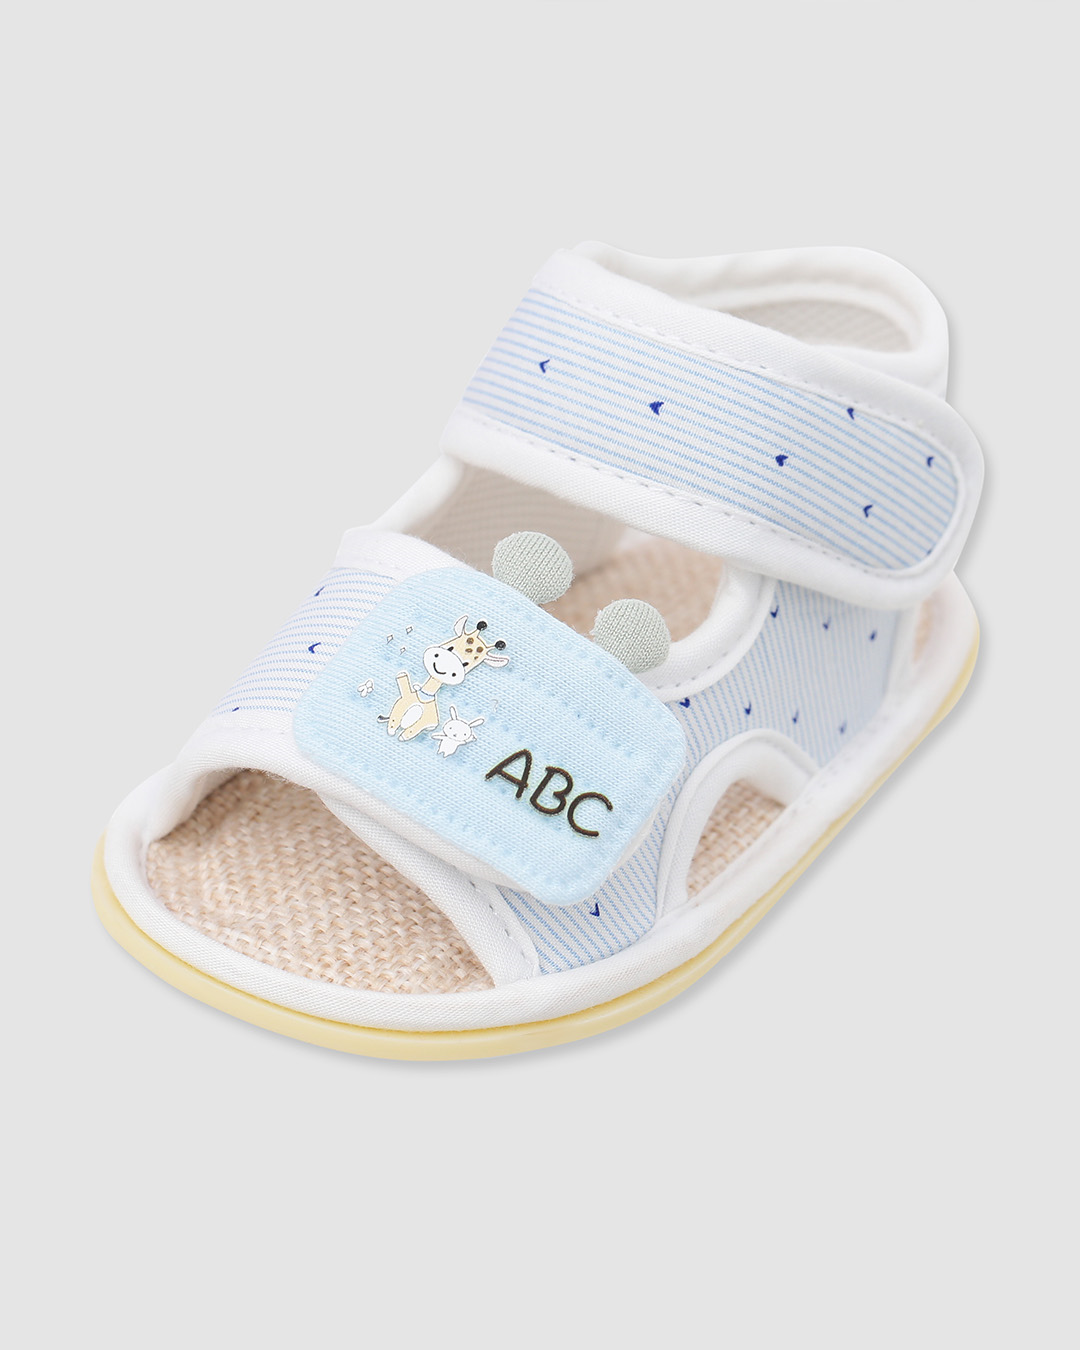 Giày tập đi cho bé Á Châu AC526 in chữ ABC màu xanh dương